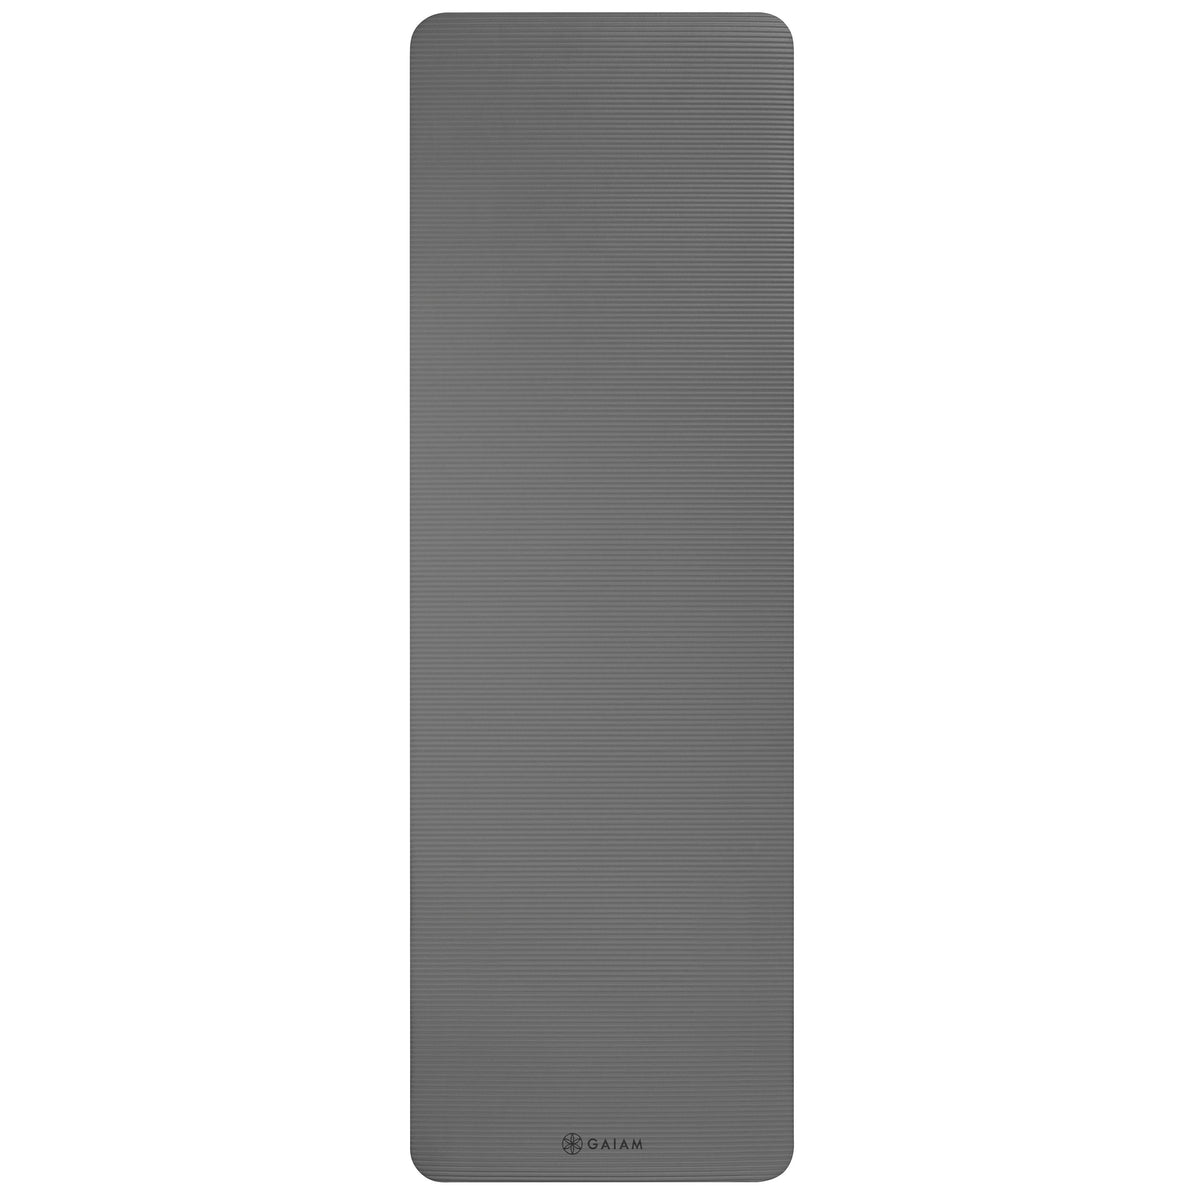 Gaiam Fitness Mat (10mm) Grey flat